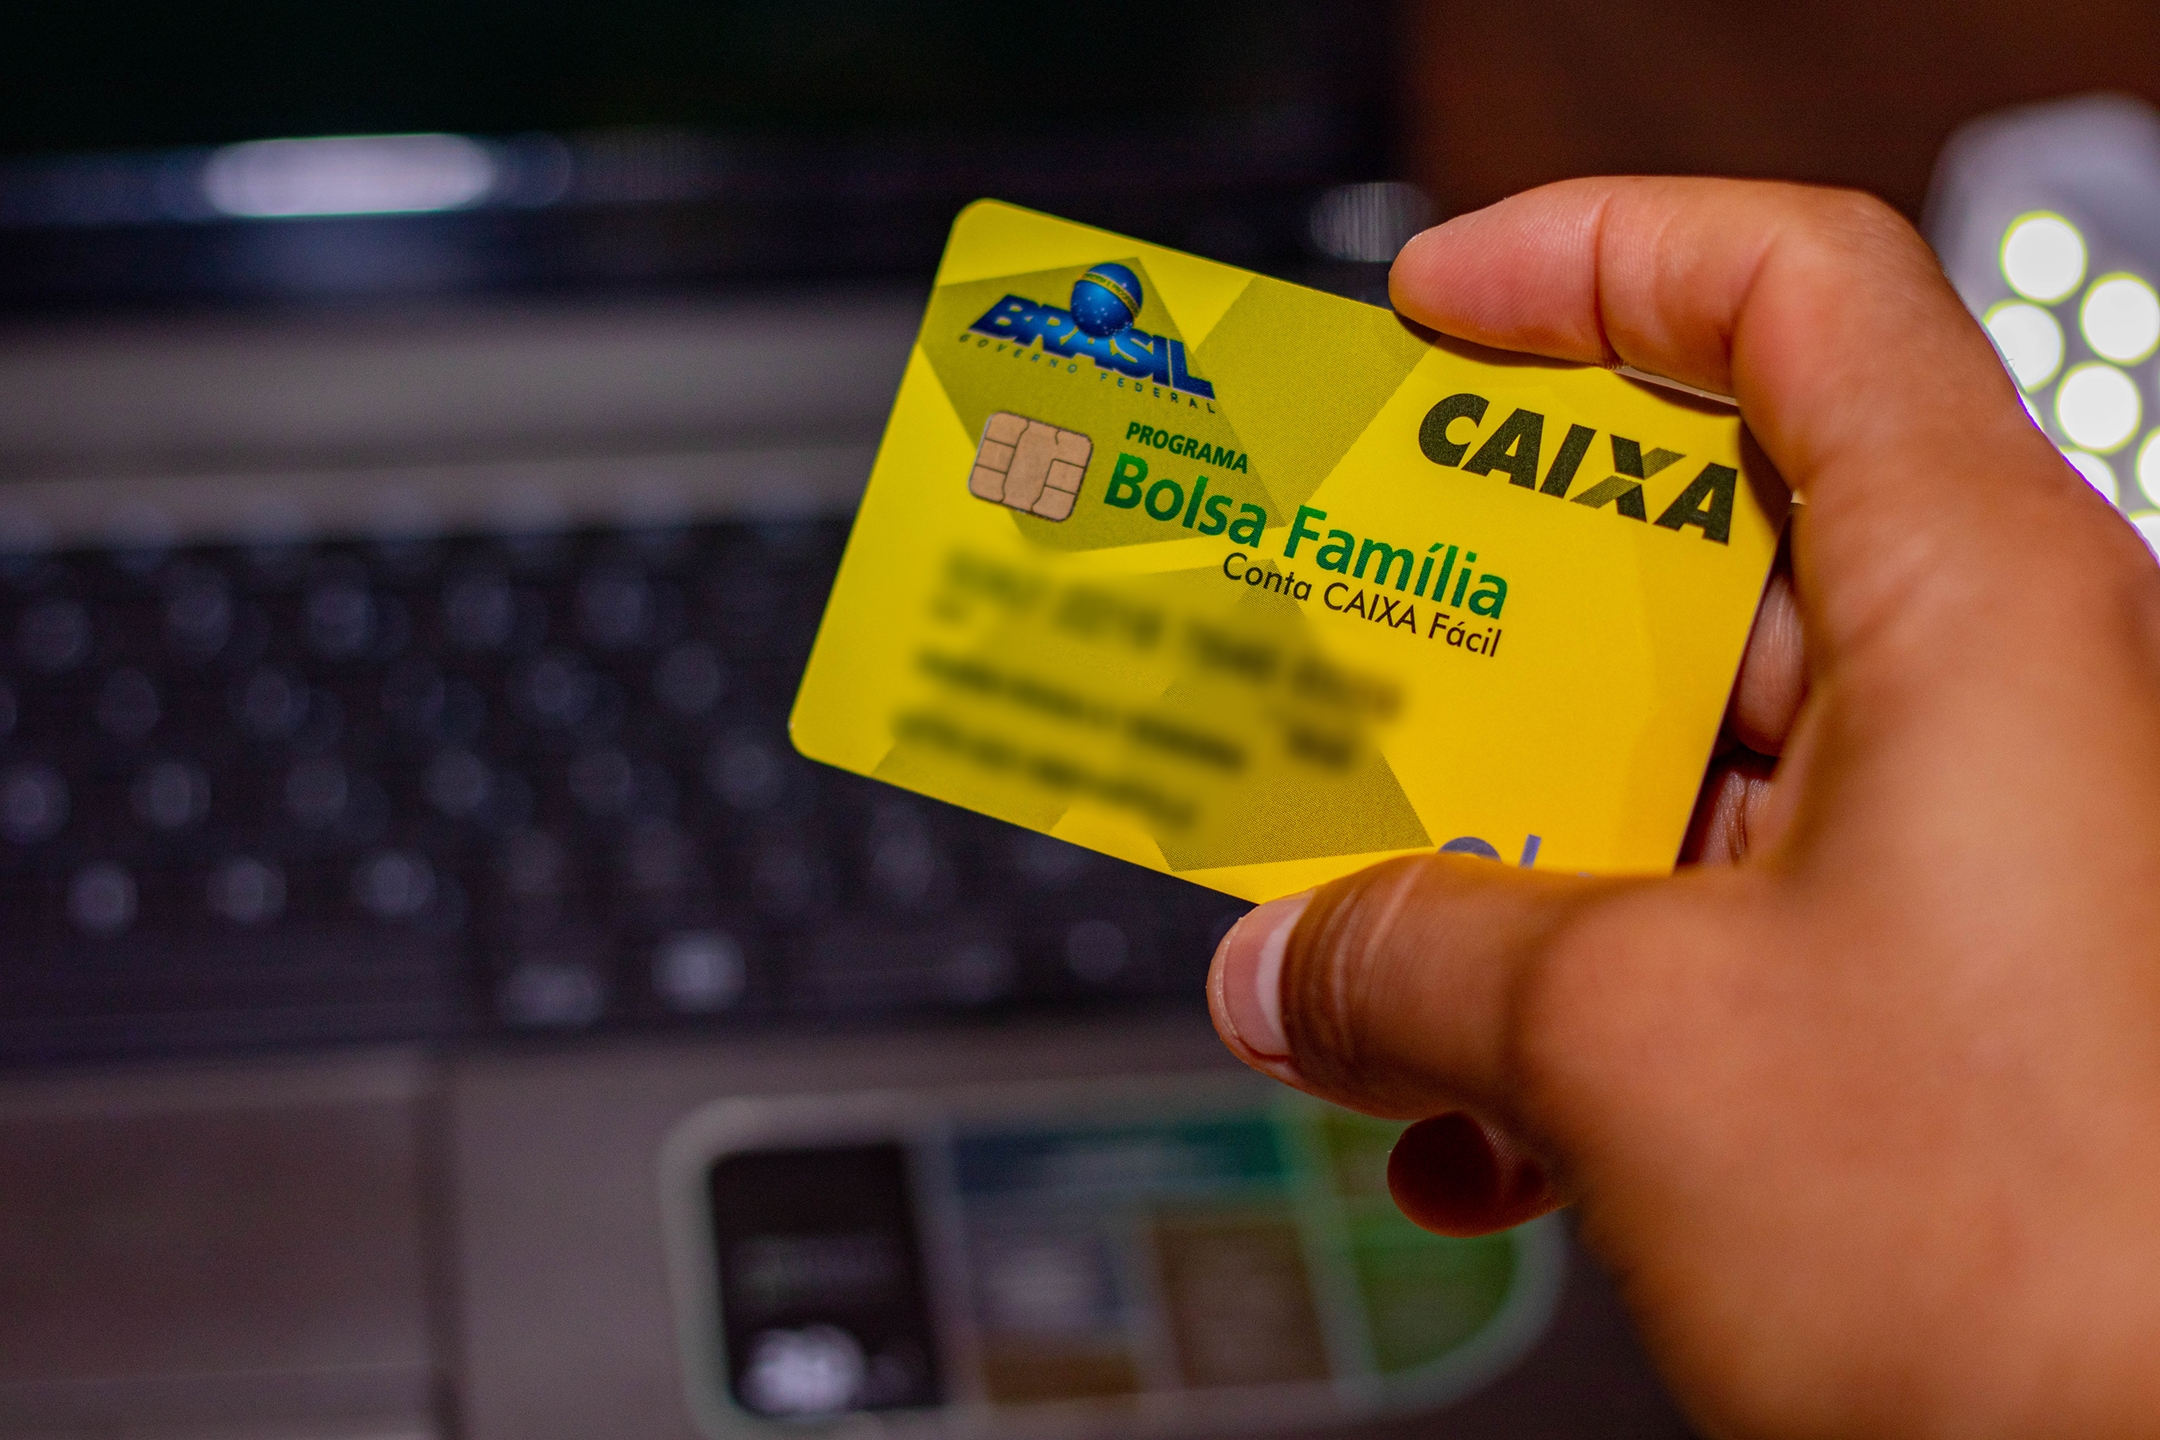  အမြန်လုပ်ဆောင်မှု။ သင့်ဆဲလ်ဖုန်းရှိ Bolsa Família ကတ်ကို လော့ခ်ဖွင့်နည်းကို လေ့လာပါ။